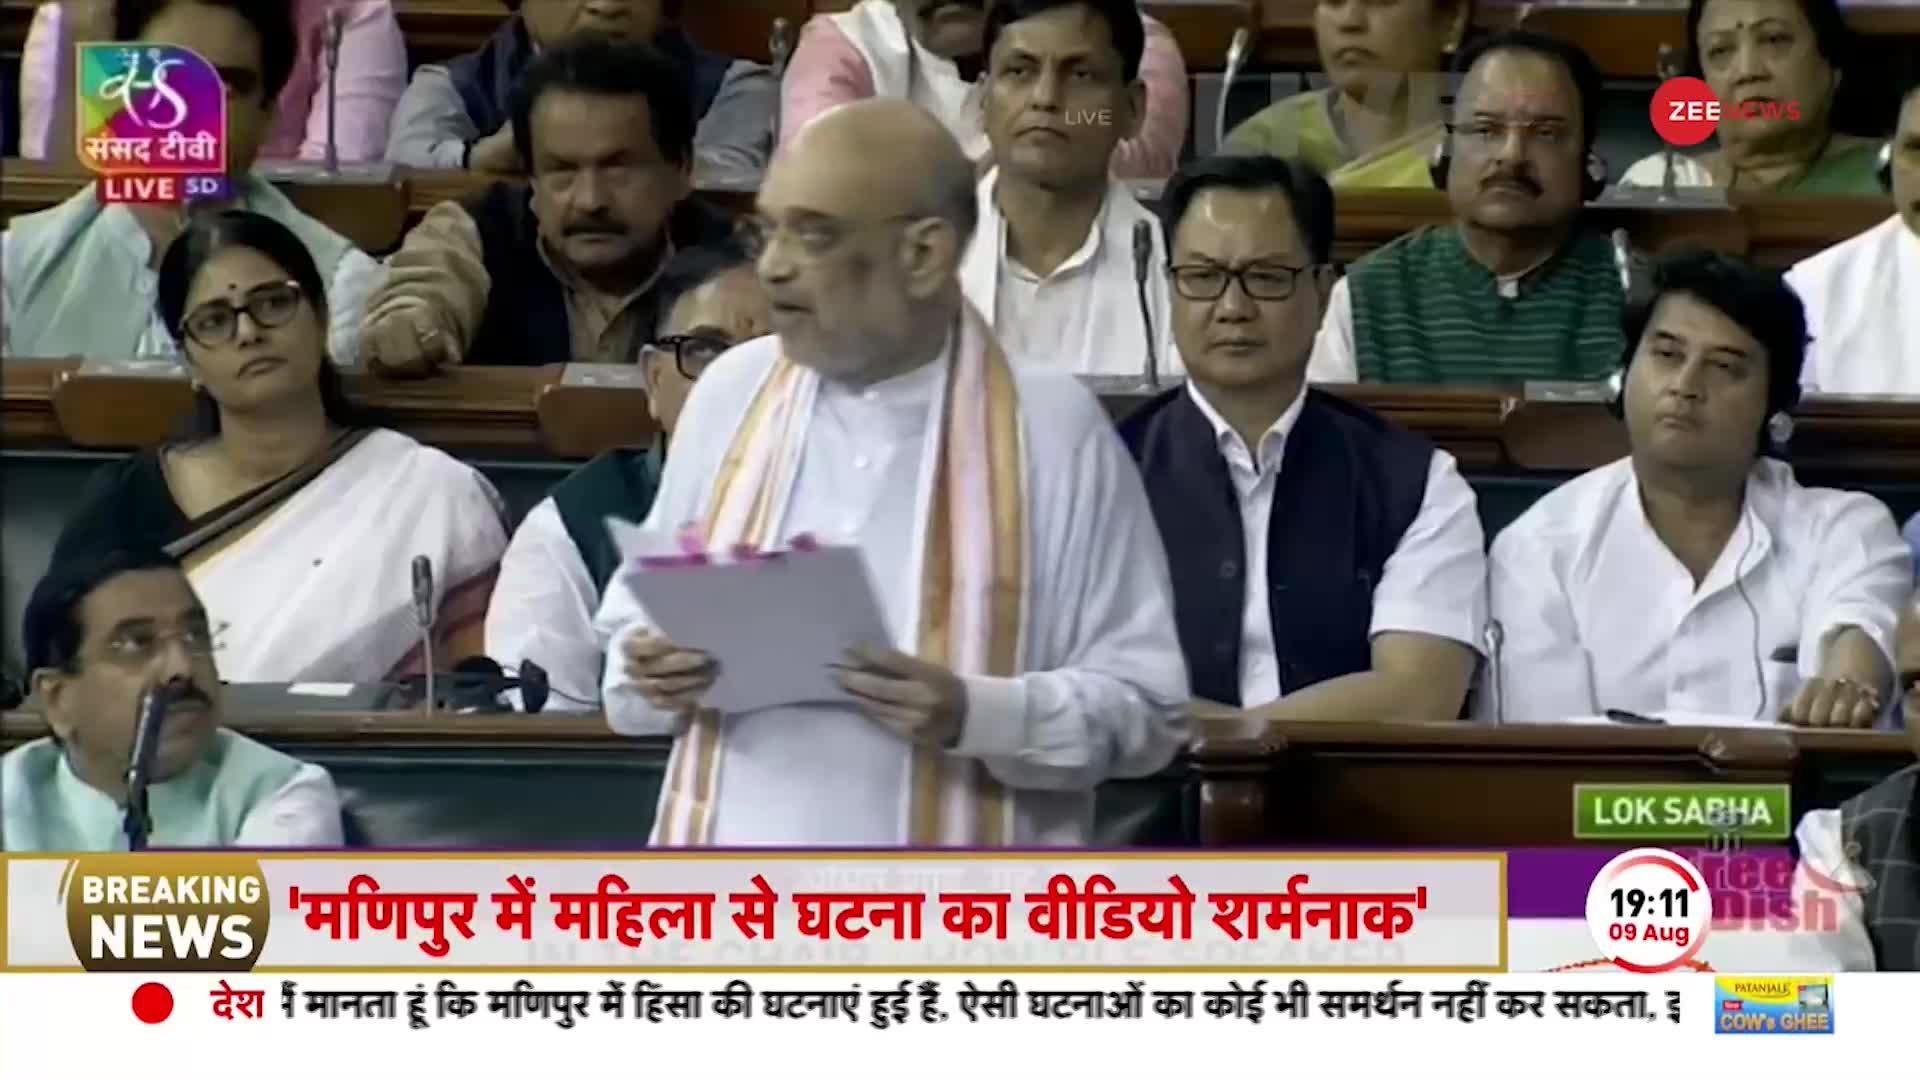 Amit Shah Big Statement In Parliament Live: अमित शाह का अविश्वास प्रस्ताव पर बड़ा बयान